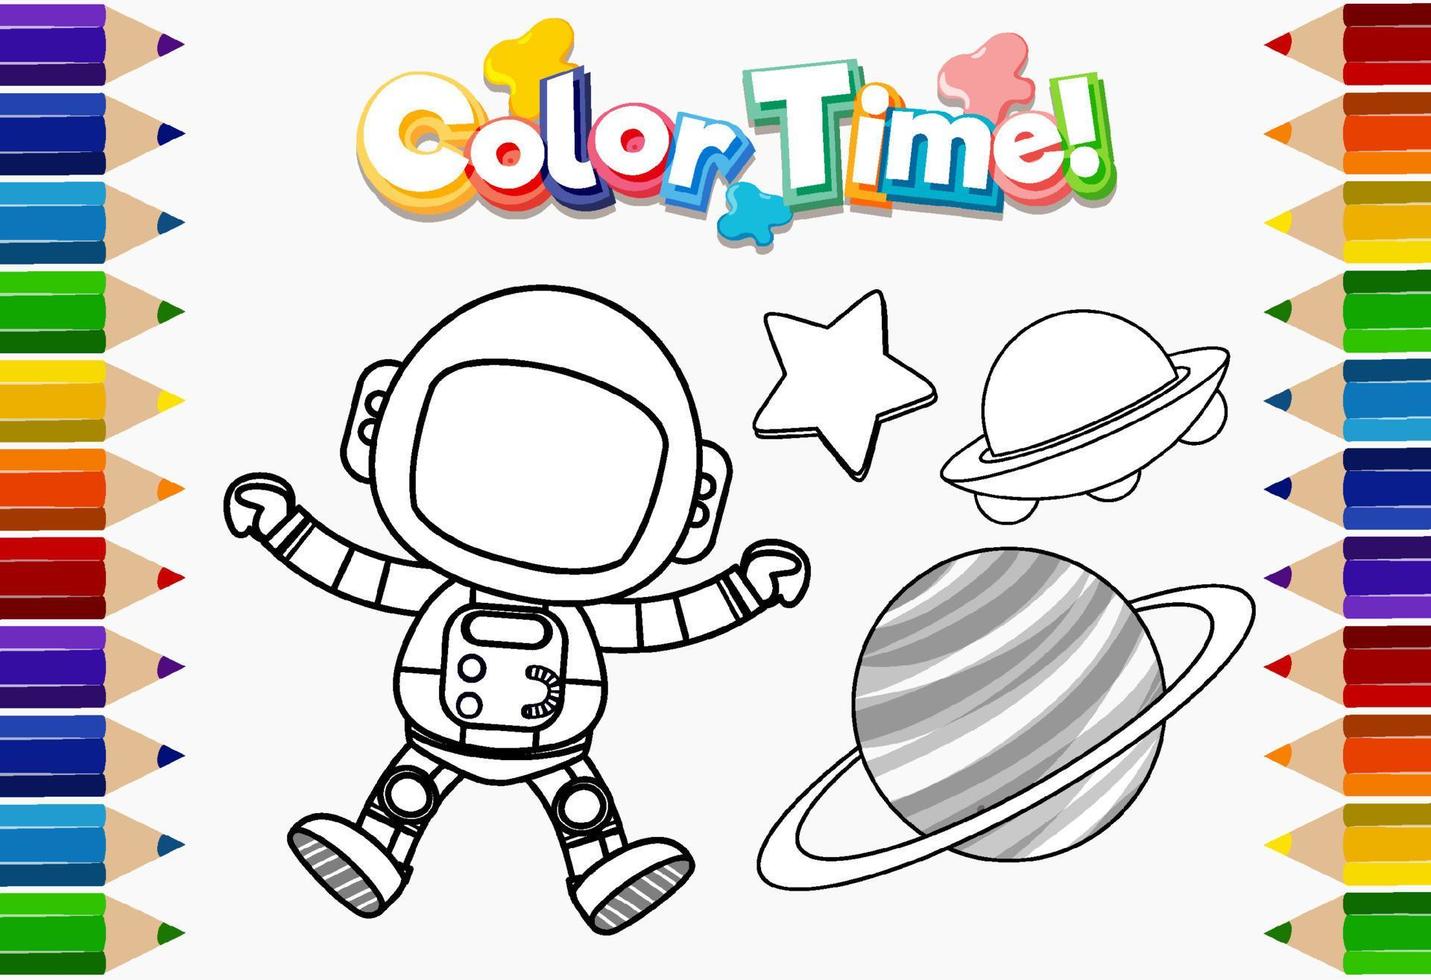 werkbladsjabloon met kleurtijdtekst en astronautenoverzicht vector